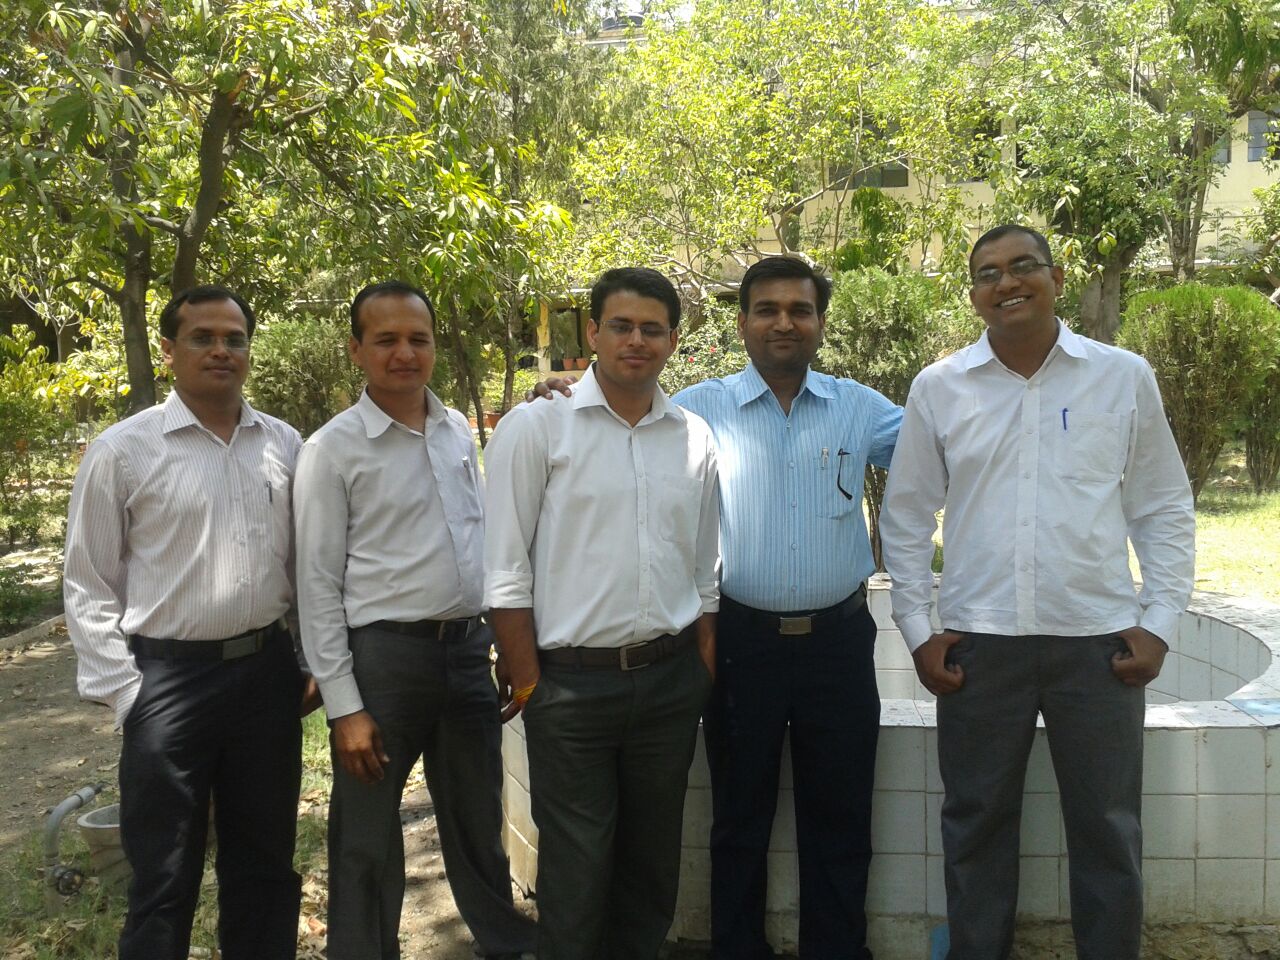 Faculty team